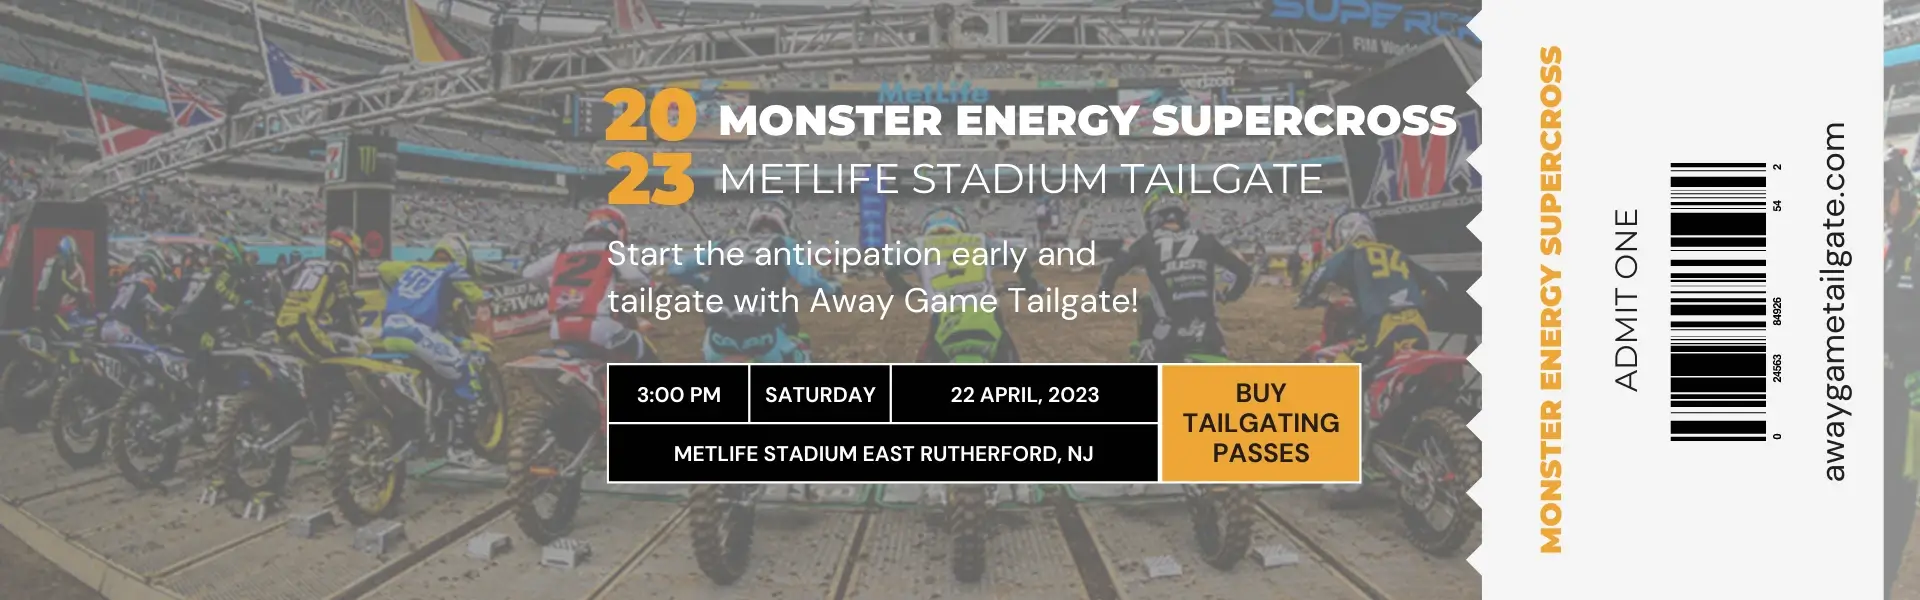 Monster Energy Supercross MetLife Stadium Tailgate